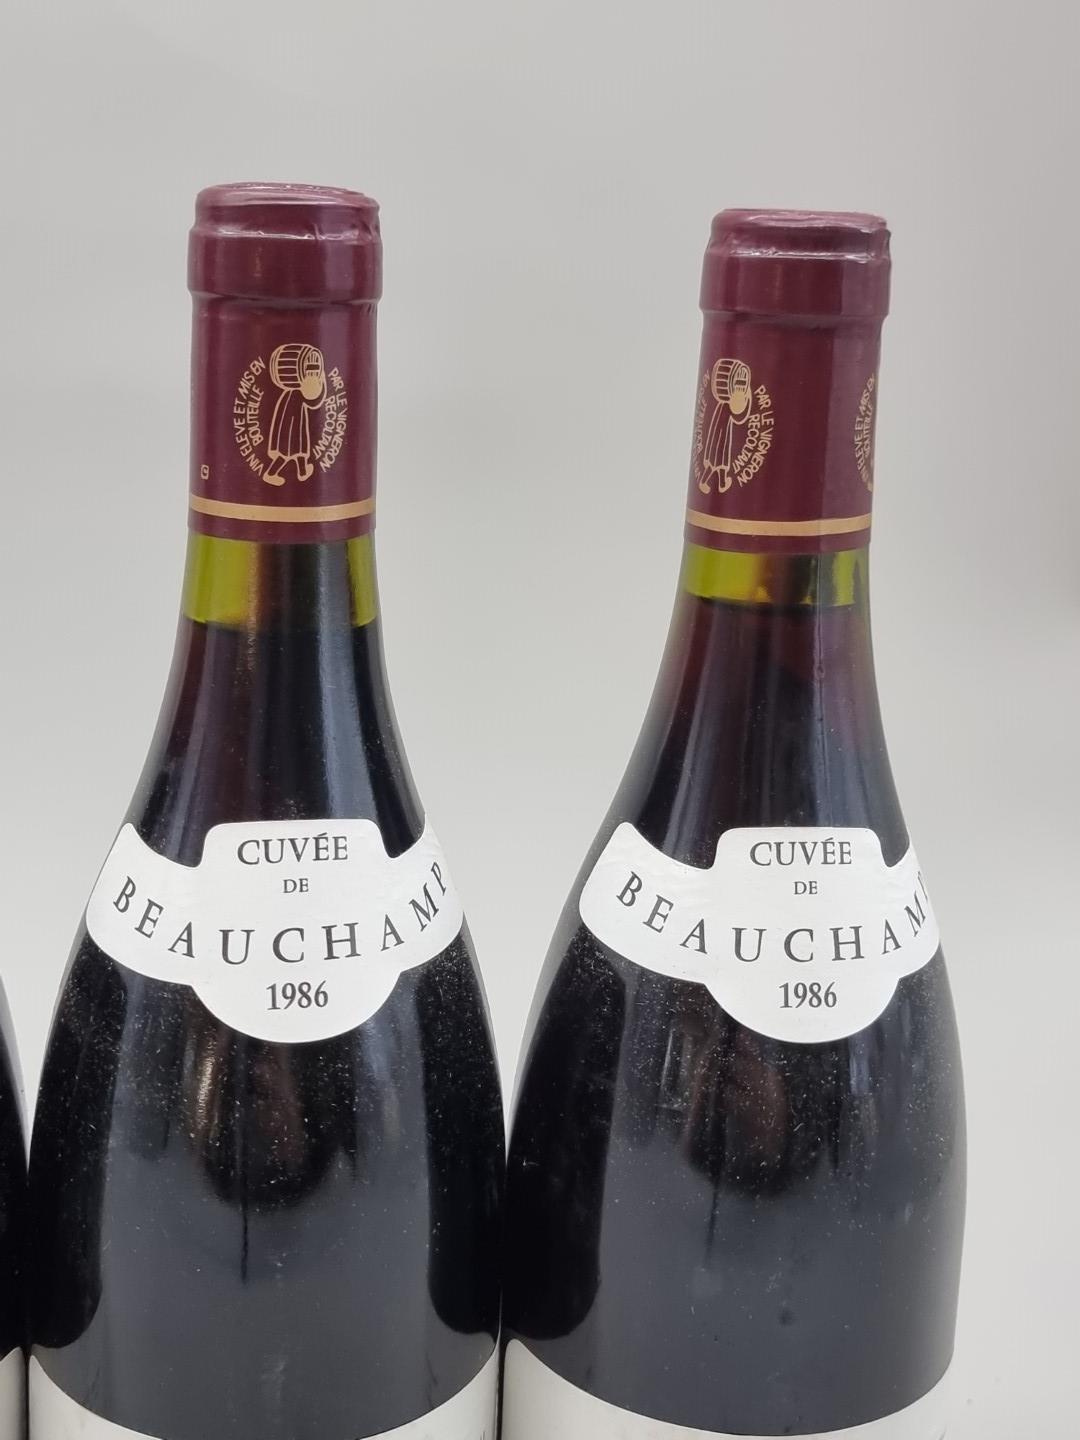 Six 75cl bottles of Gigondas Cuvee Beauchamps, 1986, Chateau de Montmirail. (6) - Bild 4 aus 4